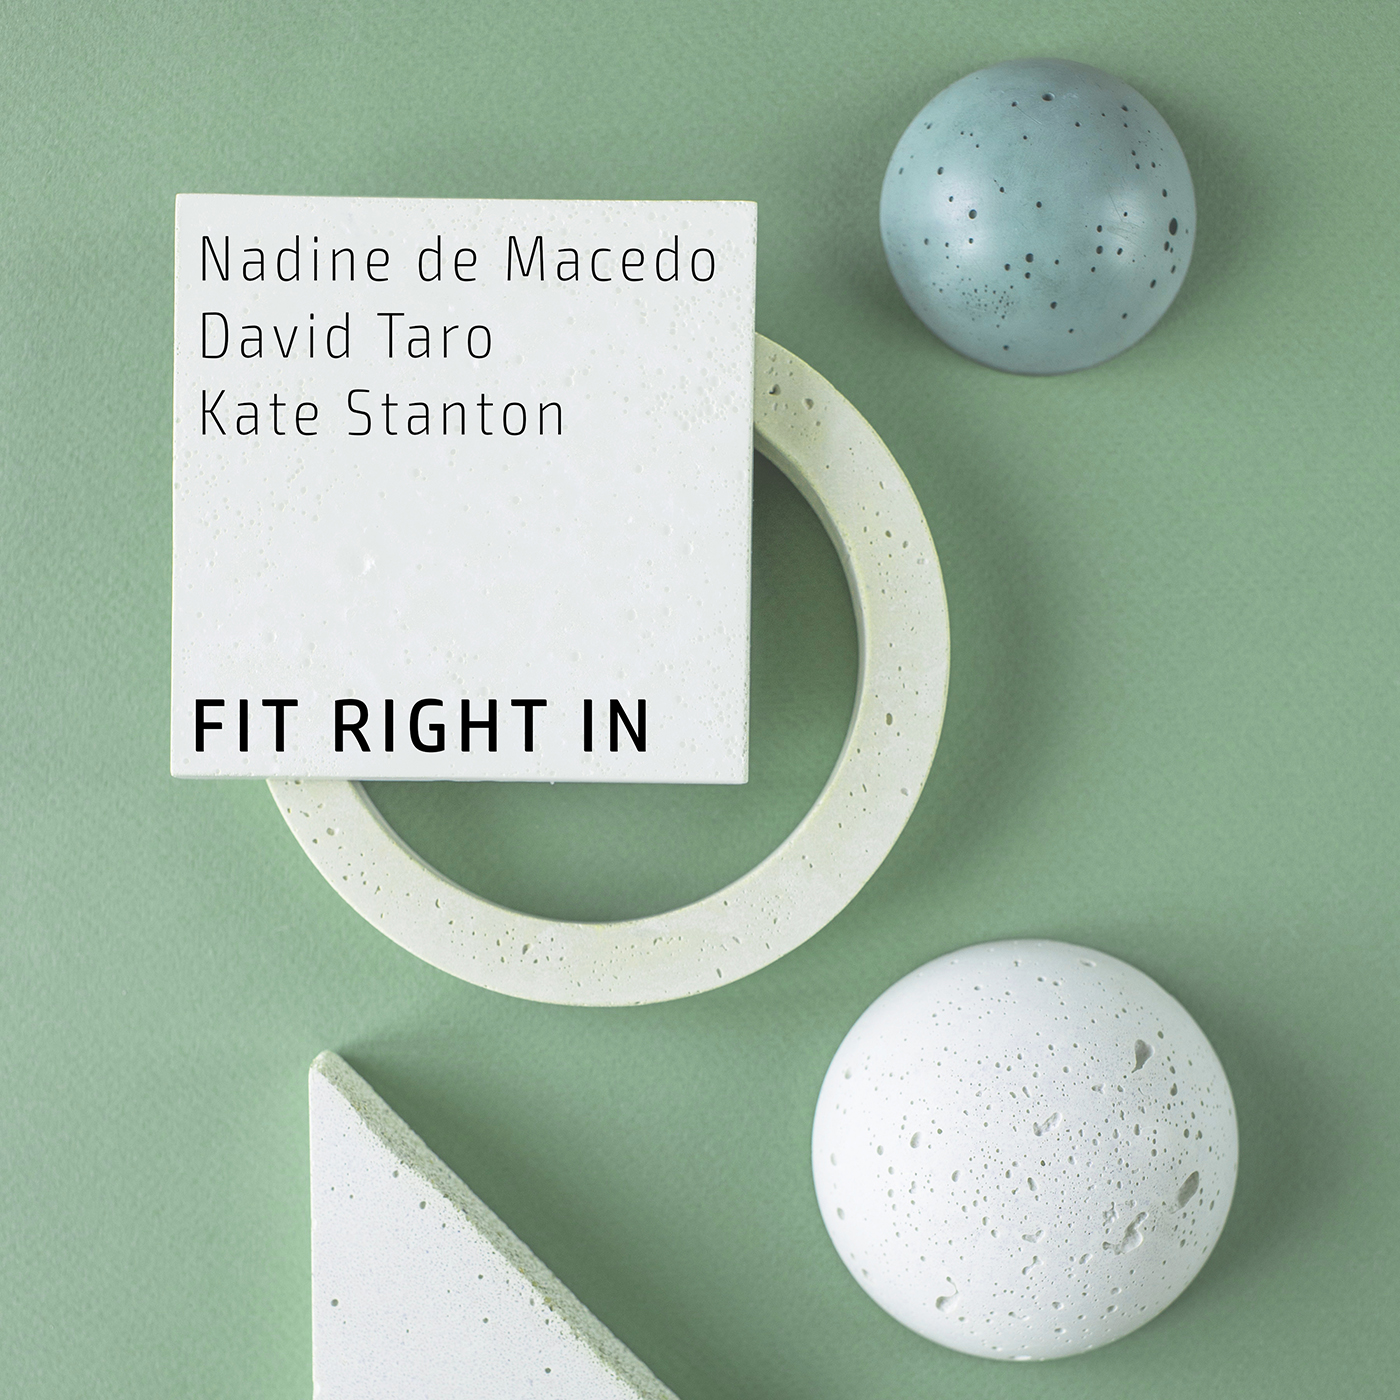 Nadine de Macedo, David Taro, Kate Stanton - Fit Right in